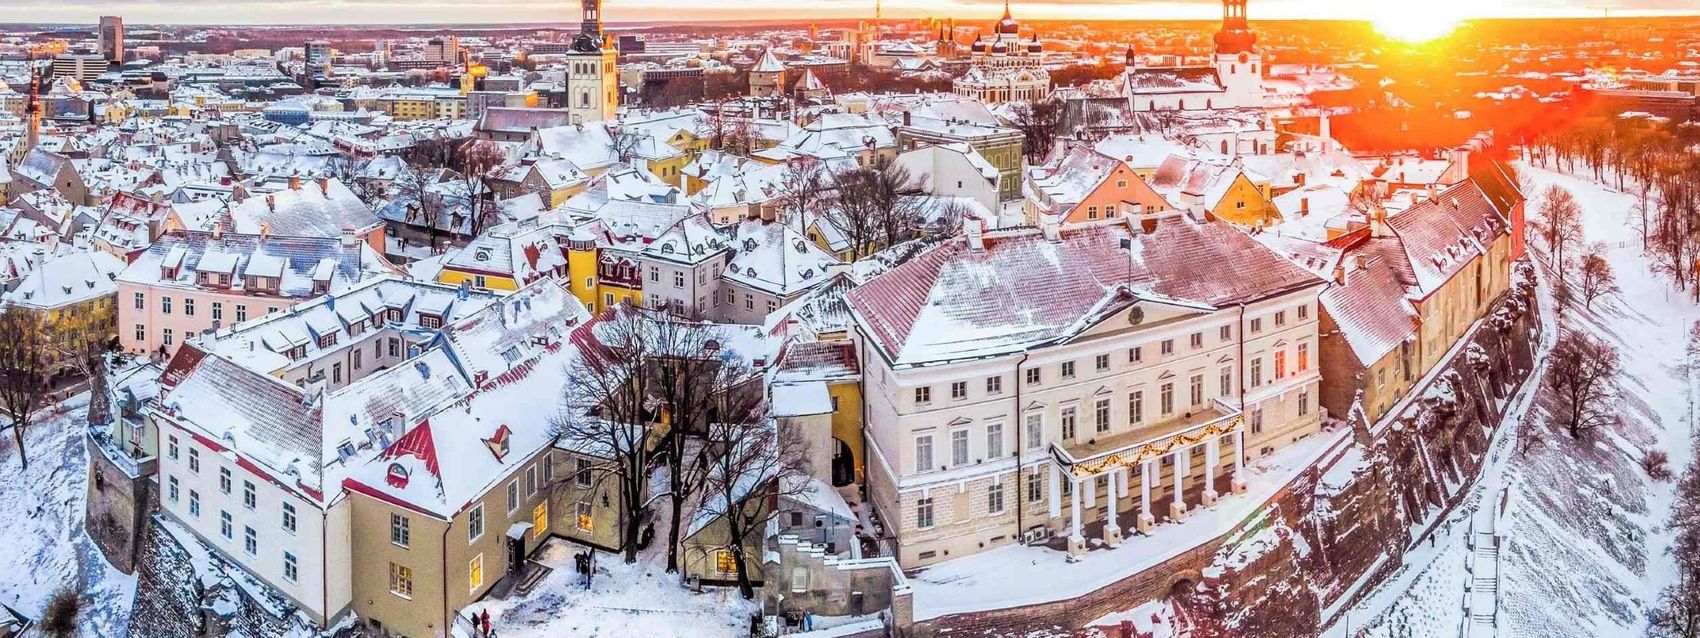 Snow in the Old Town of Tallinn, Estonia